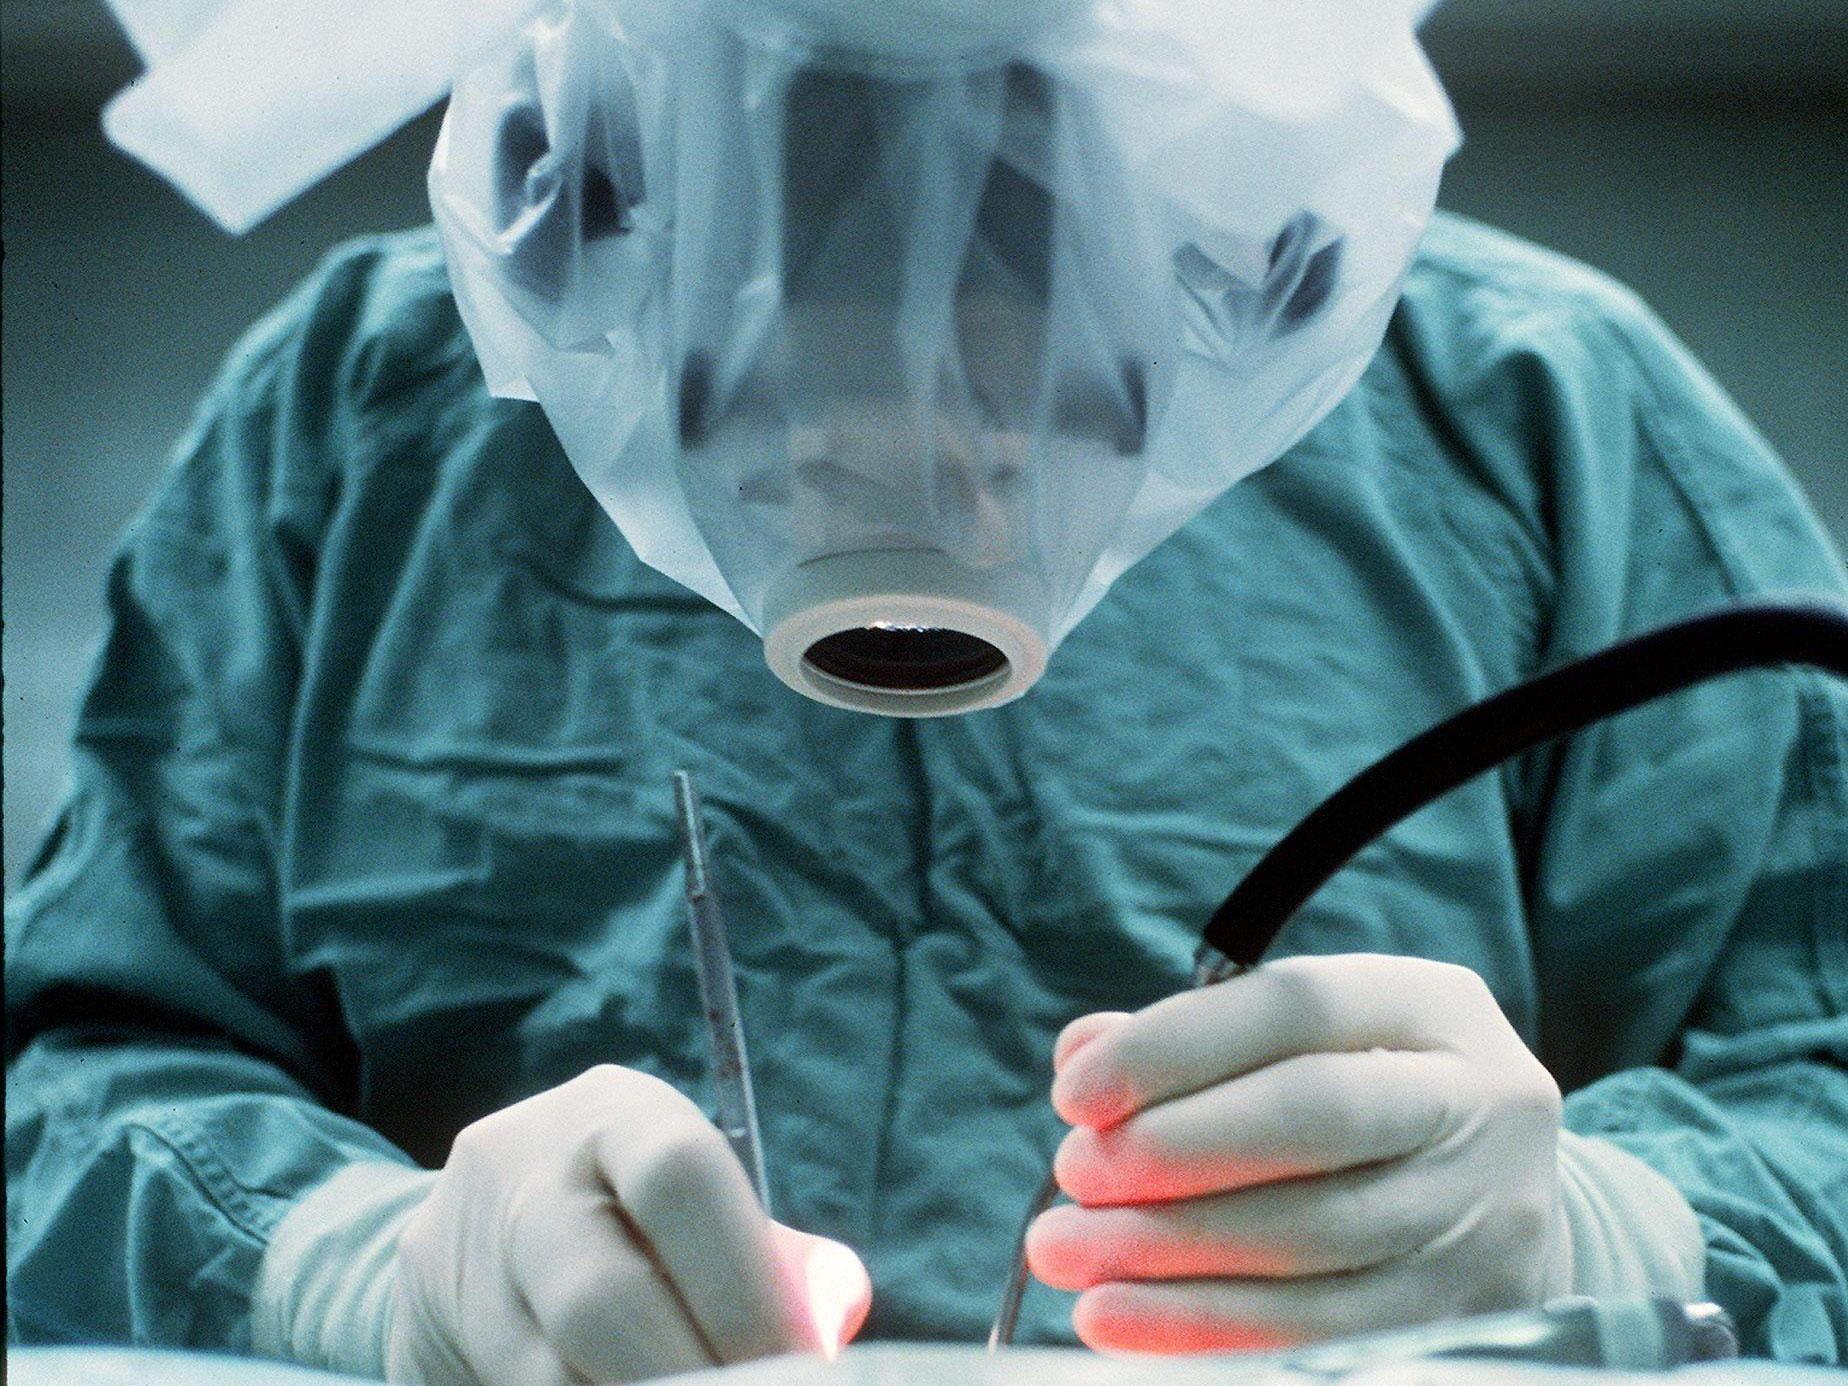 Britischer Chirurg soll Patientenleber signiert haben